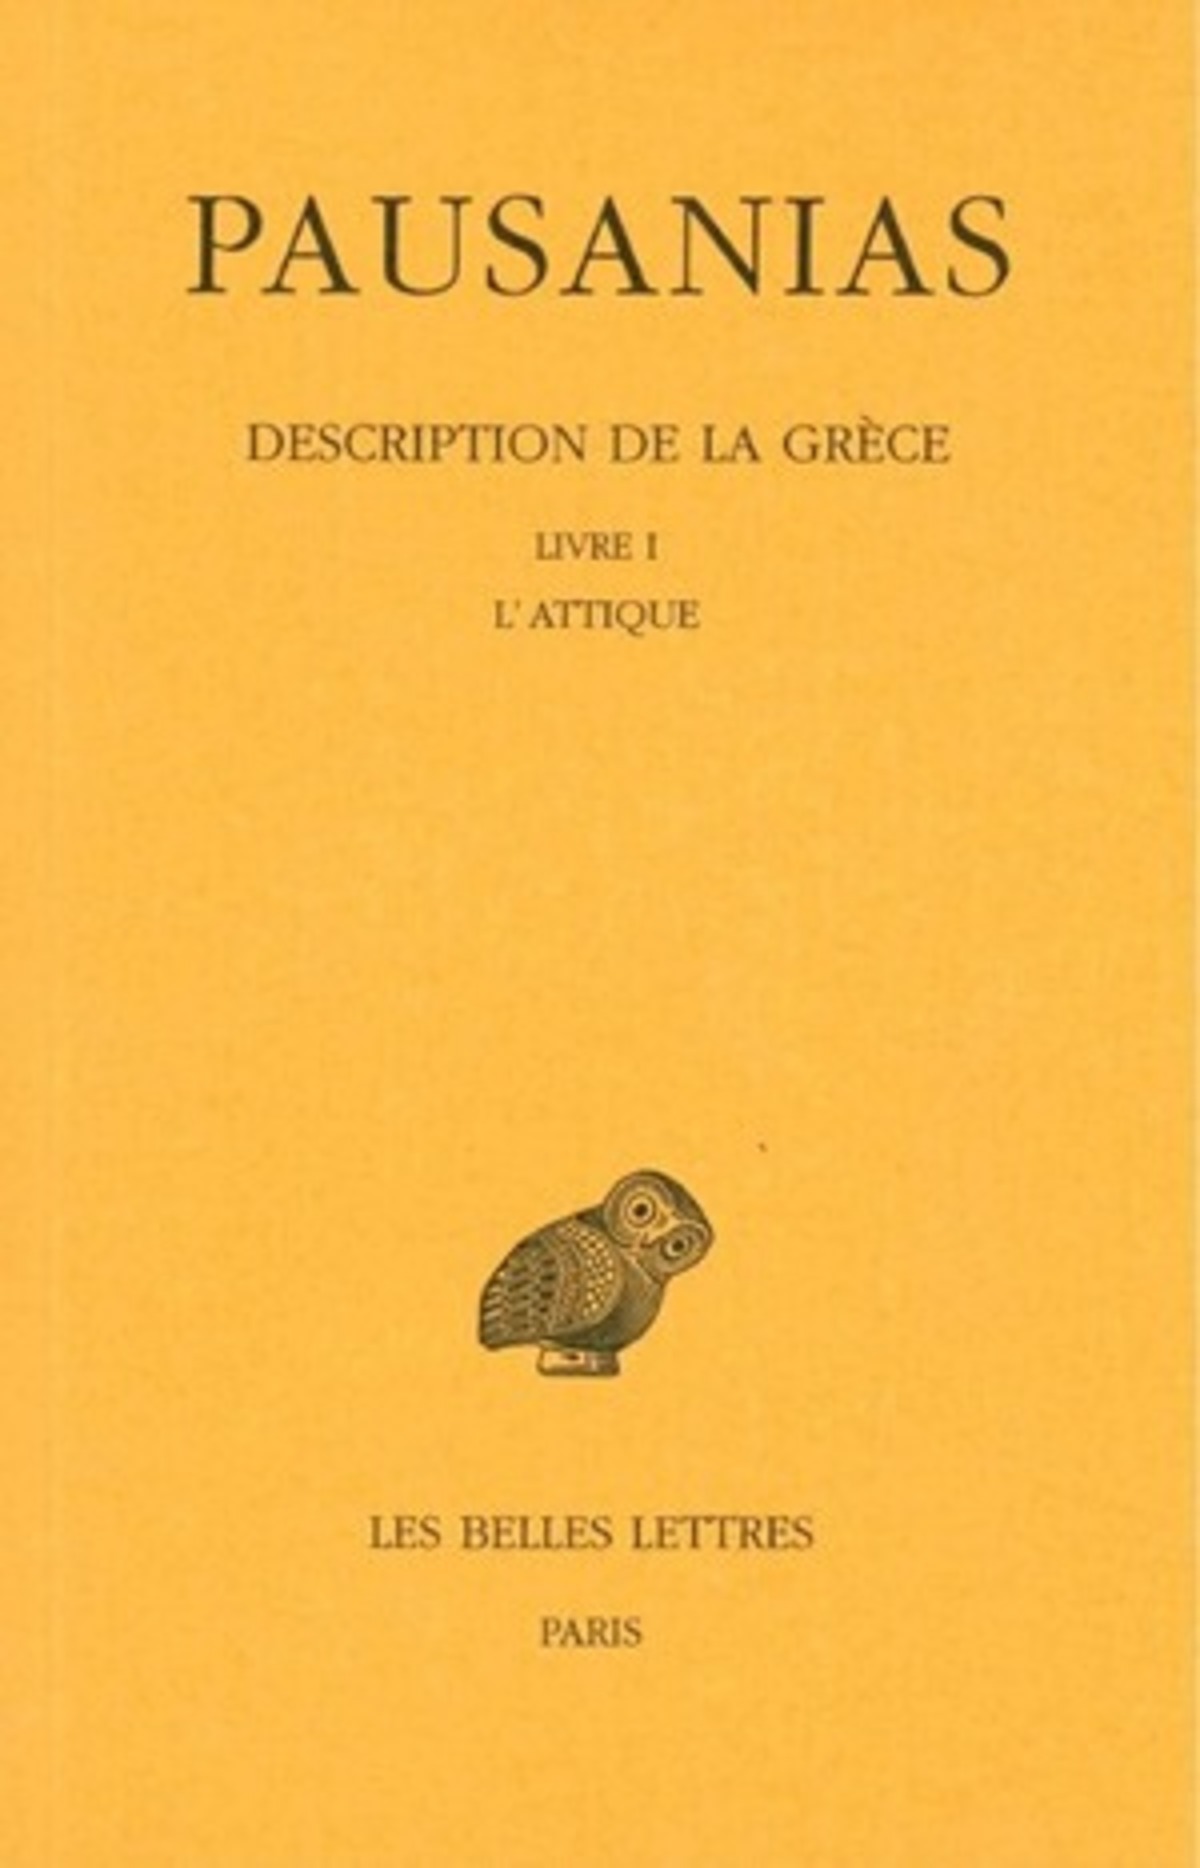 Description de la Grèce. Tome I : Introduction générale. Livre I : L'Attique